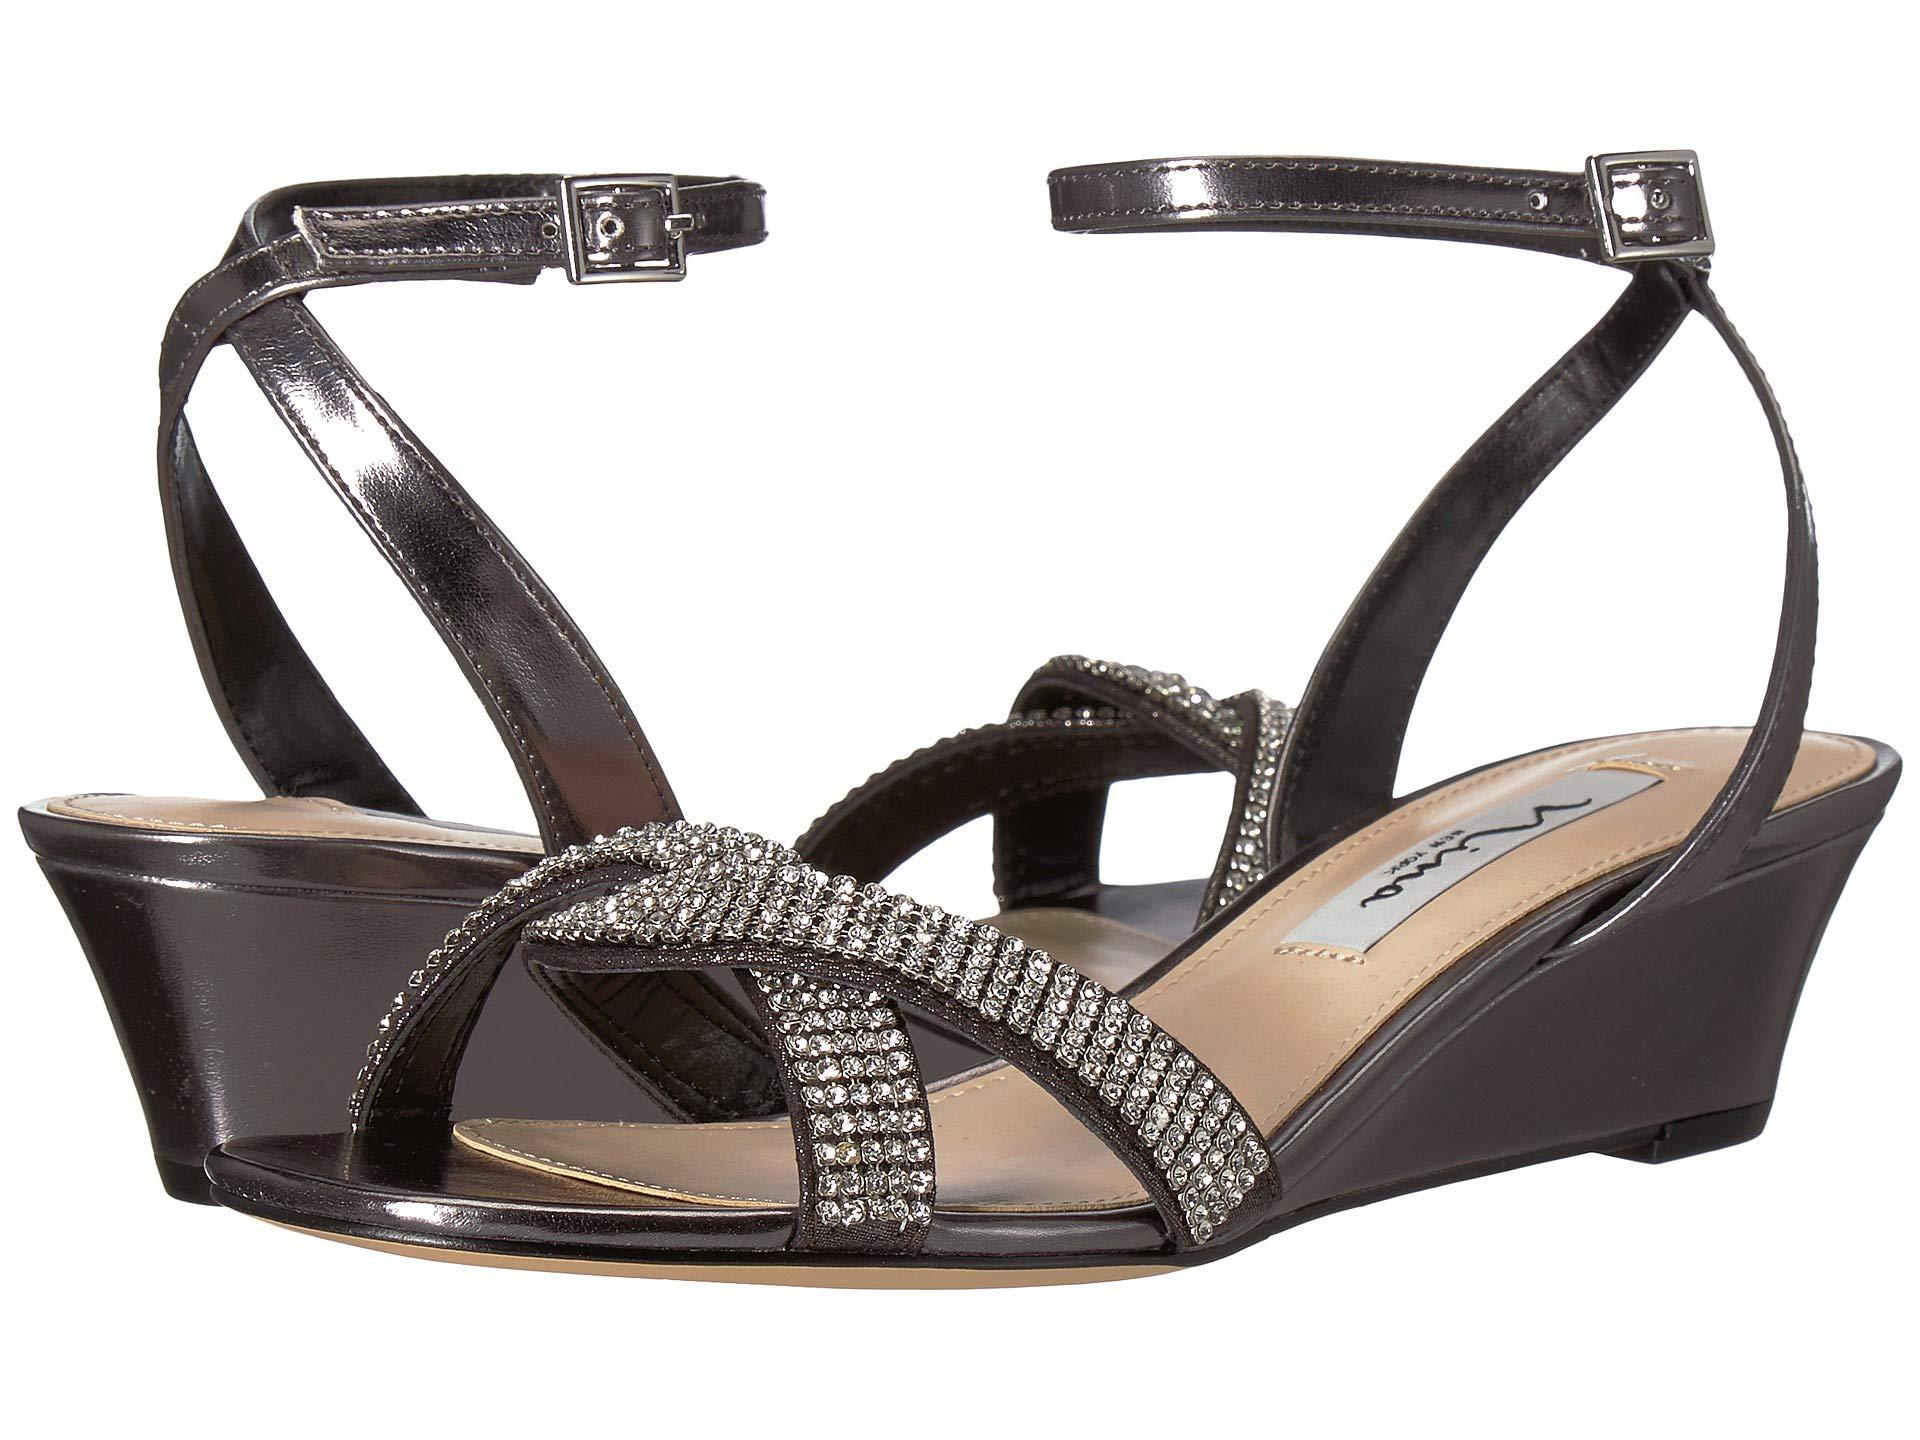 Wedges Shoes - Buy Women's Wedge Heels & Sandals Online